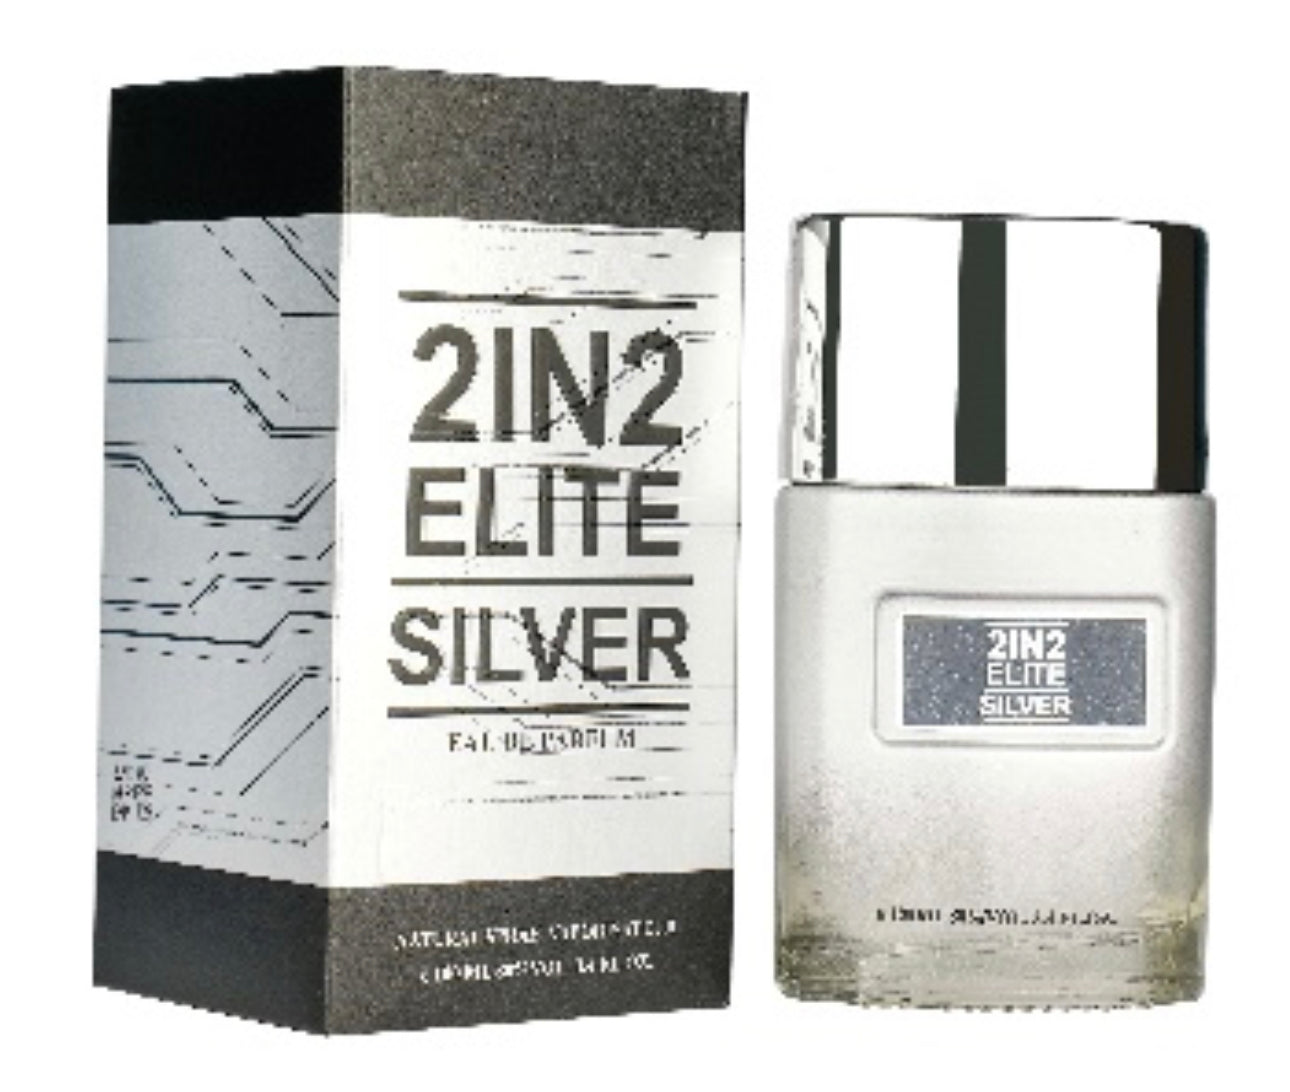 2IN2 Elite Silver 男士款